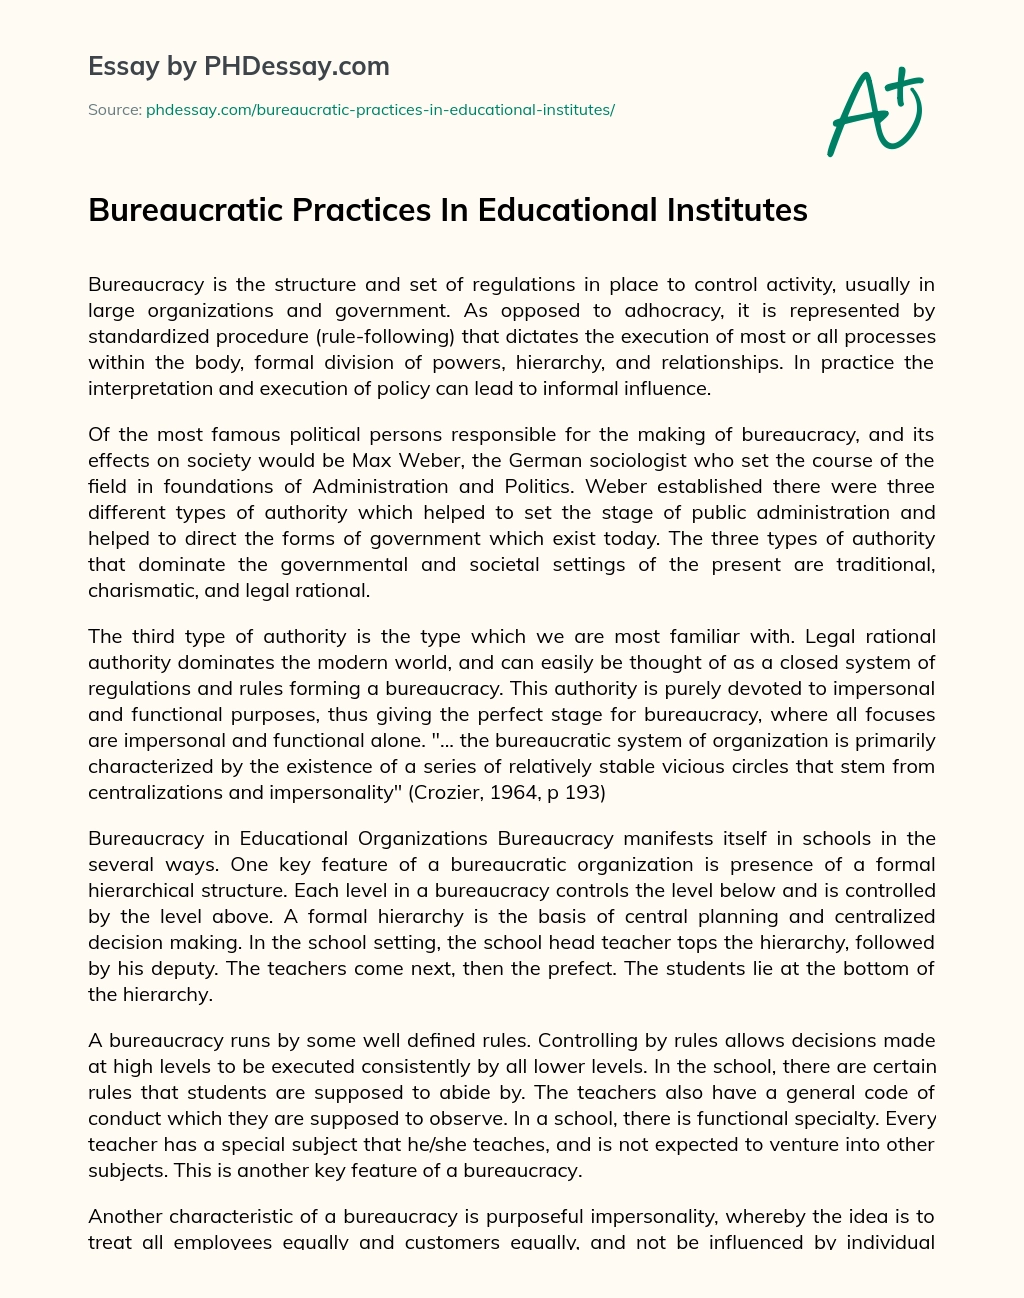 Bureaucratic Practices In Educational Institutes essay